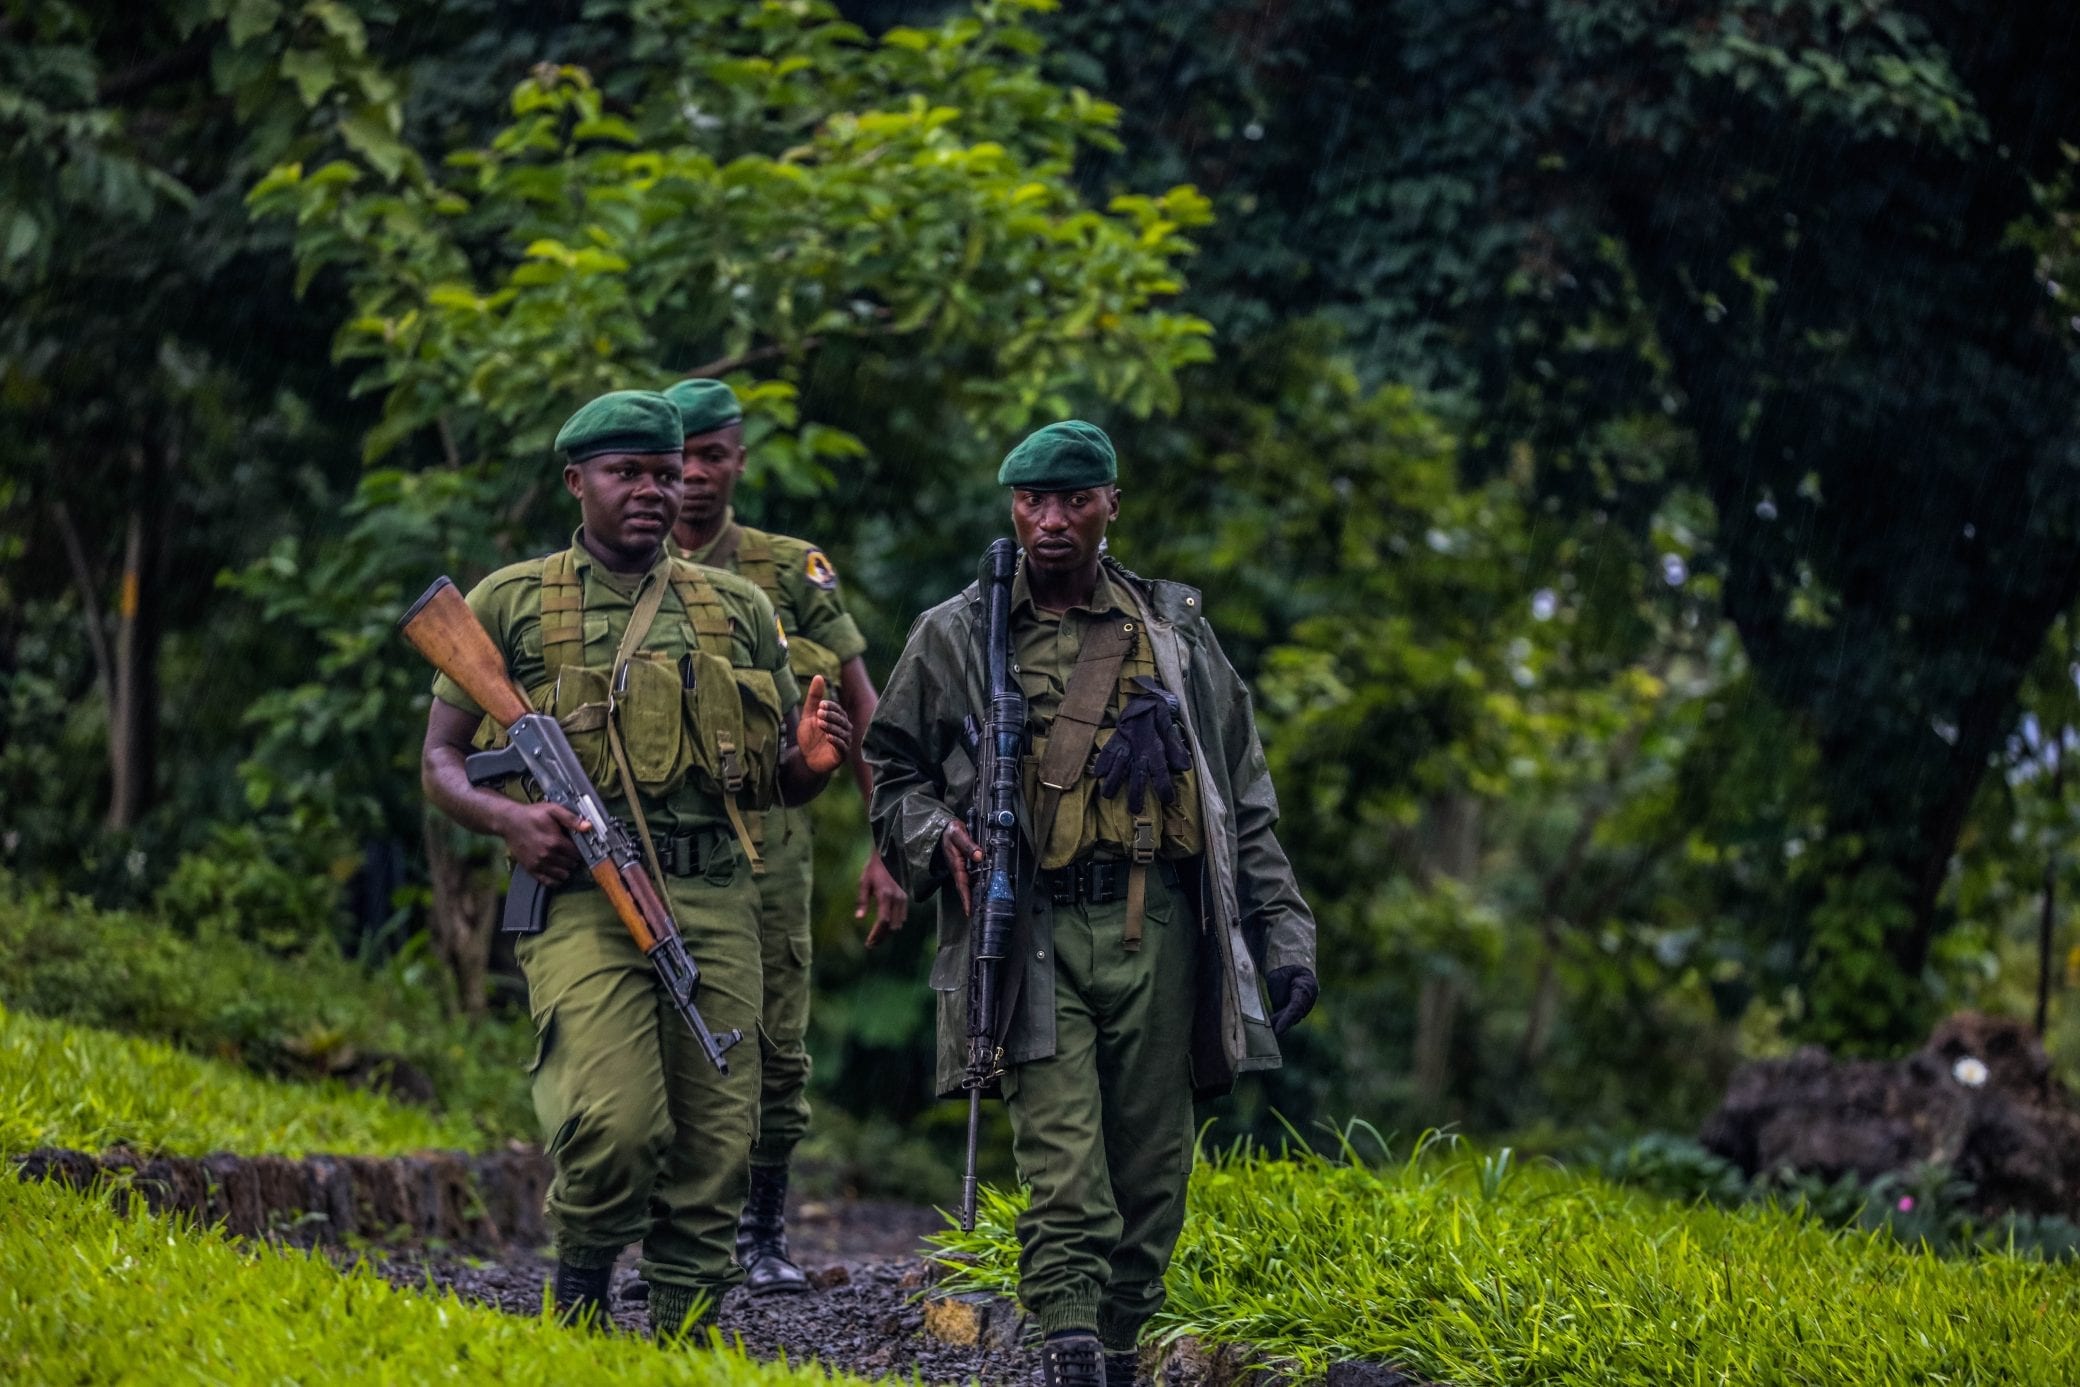 Group of Virunga rangers walking